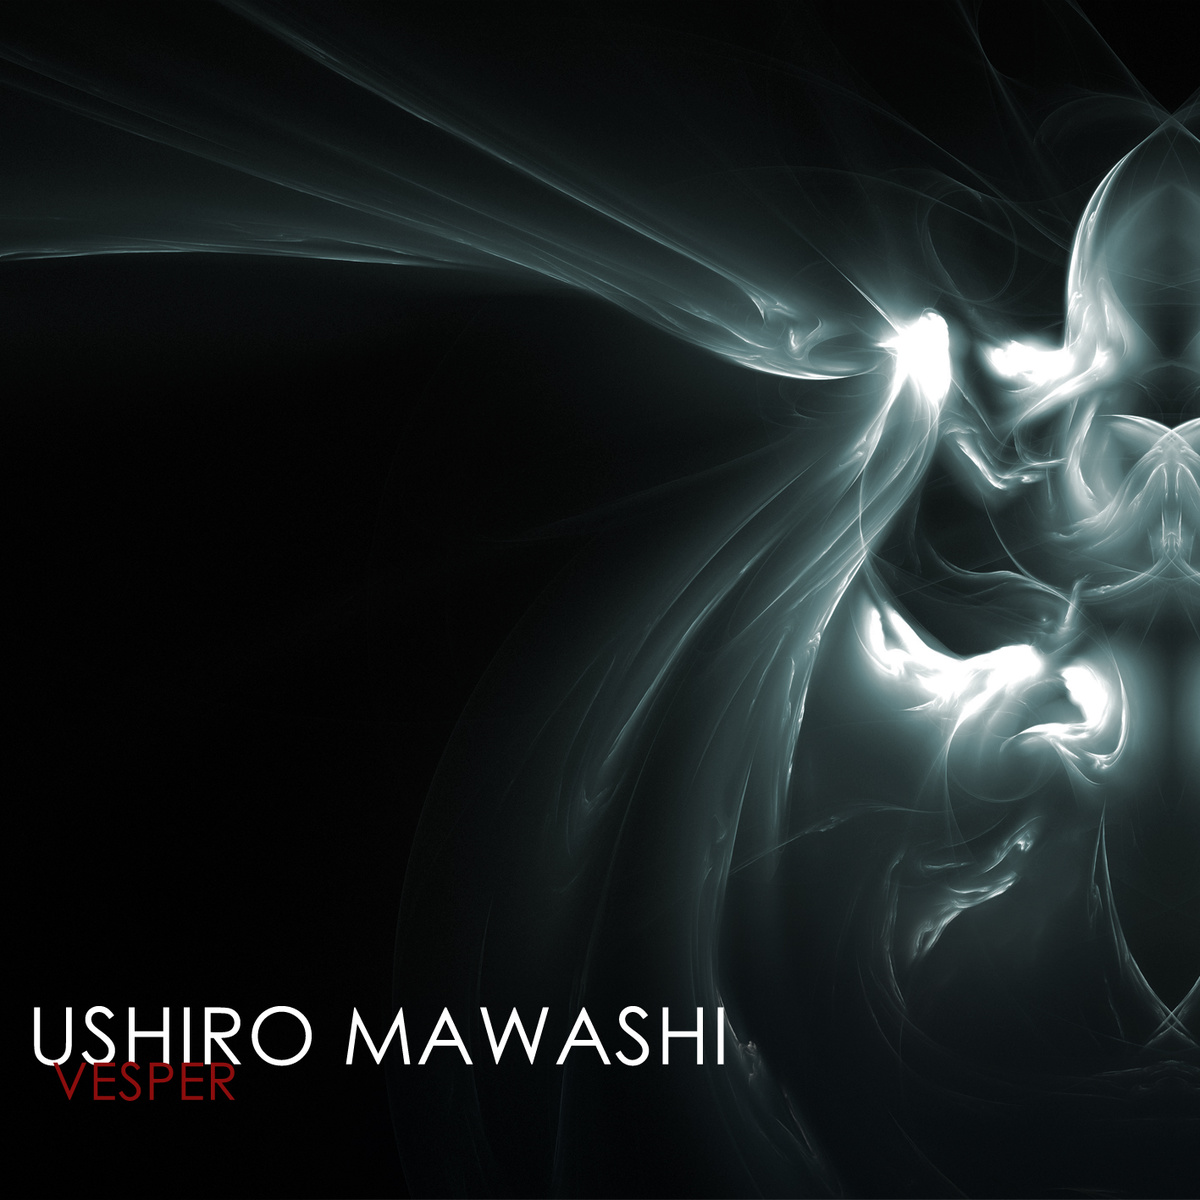 Ushiro Mawashi - Vespri